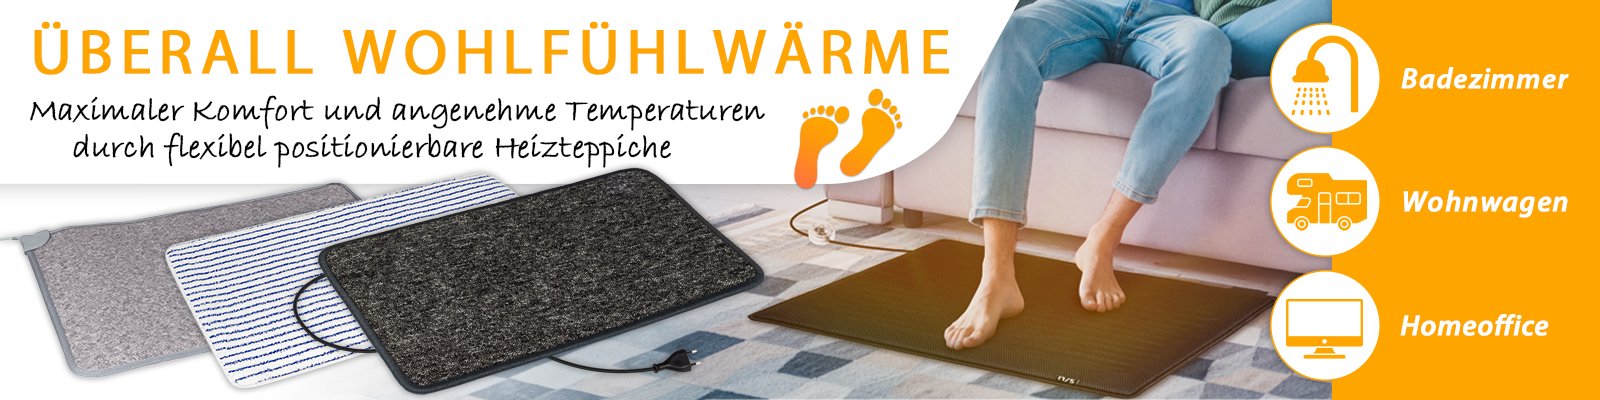 Heizteppiche - Einfach auslegen und die Wärme an den Füßen genießen